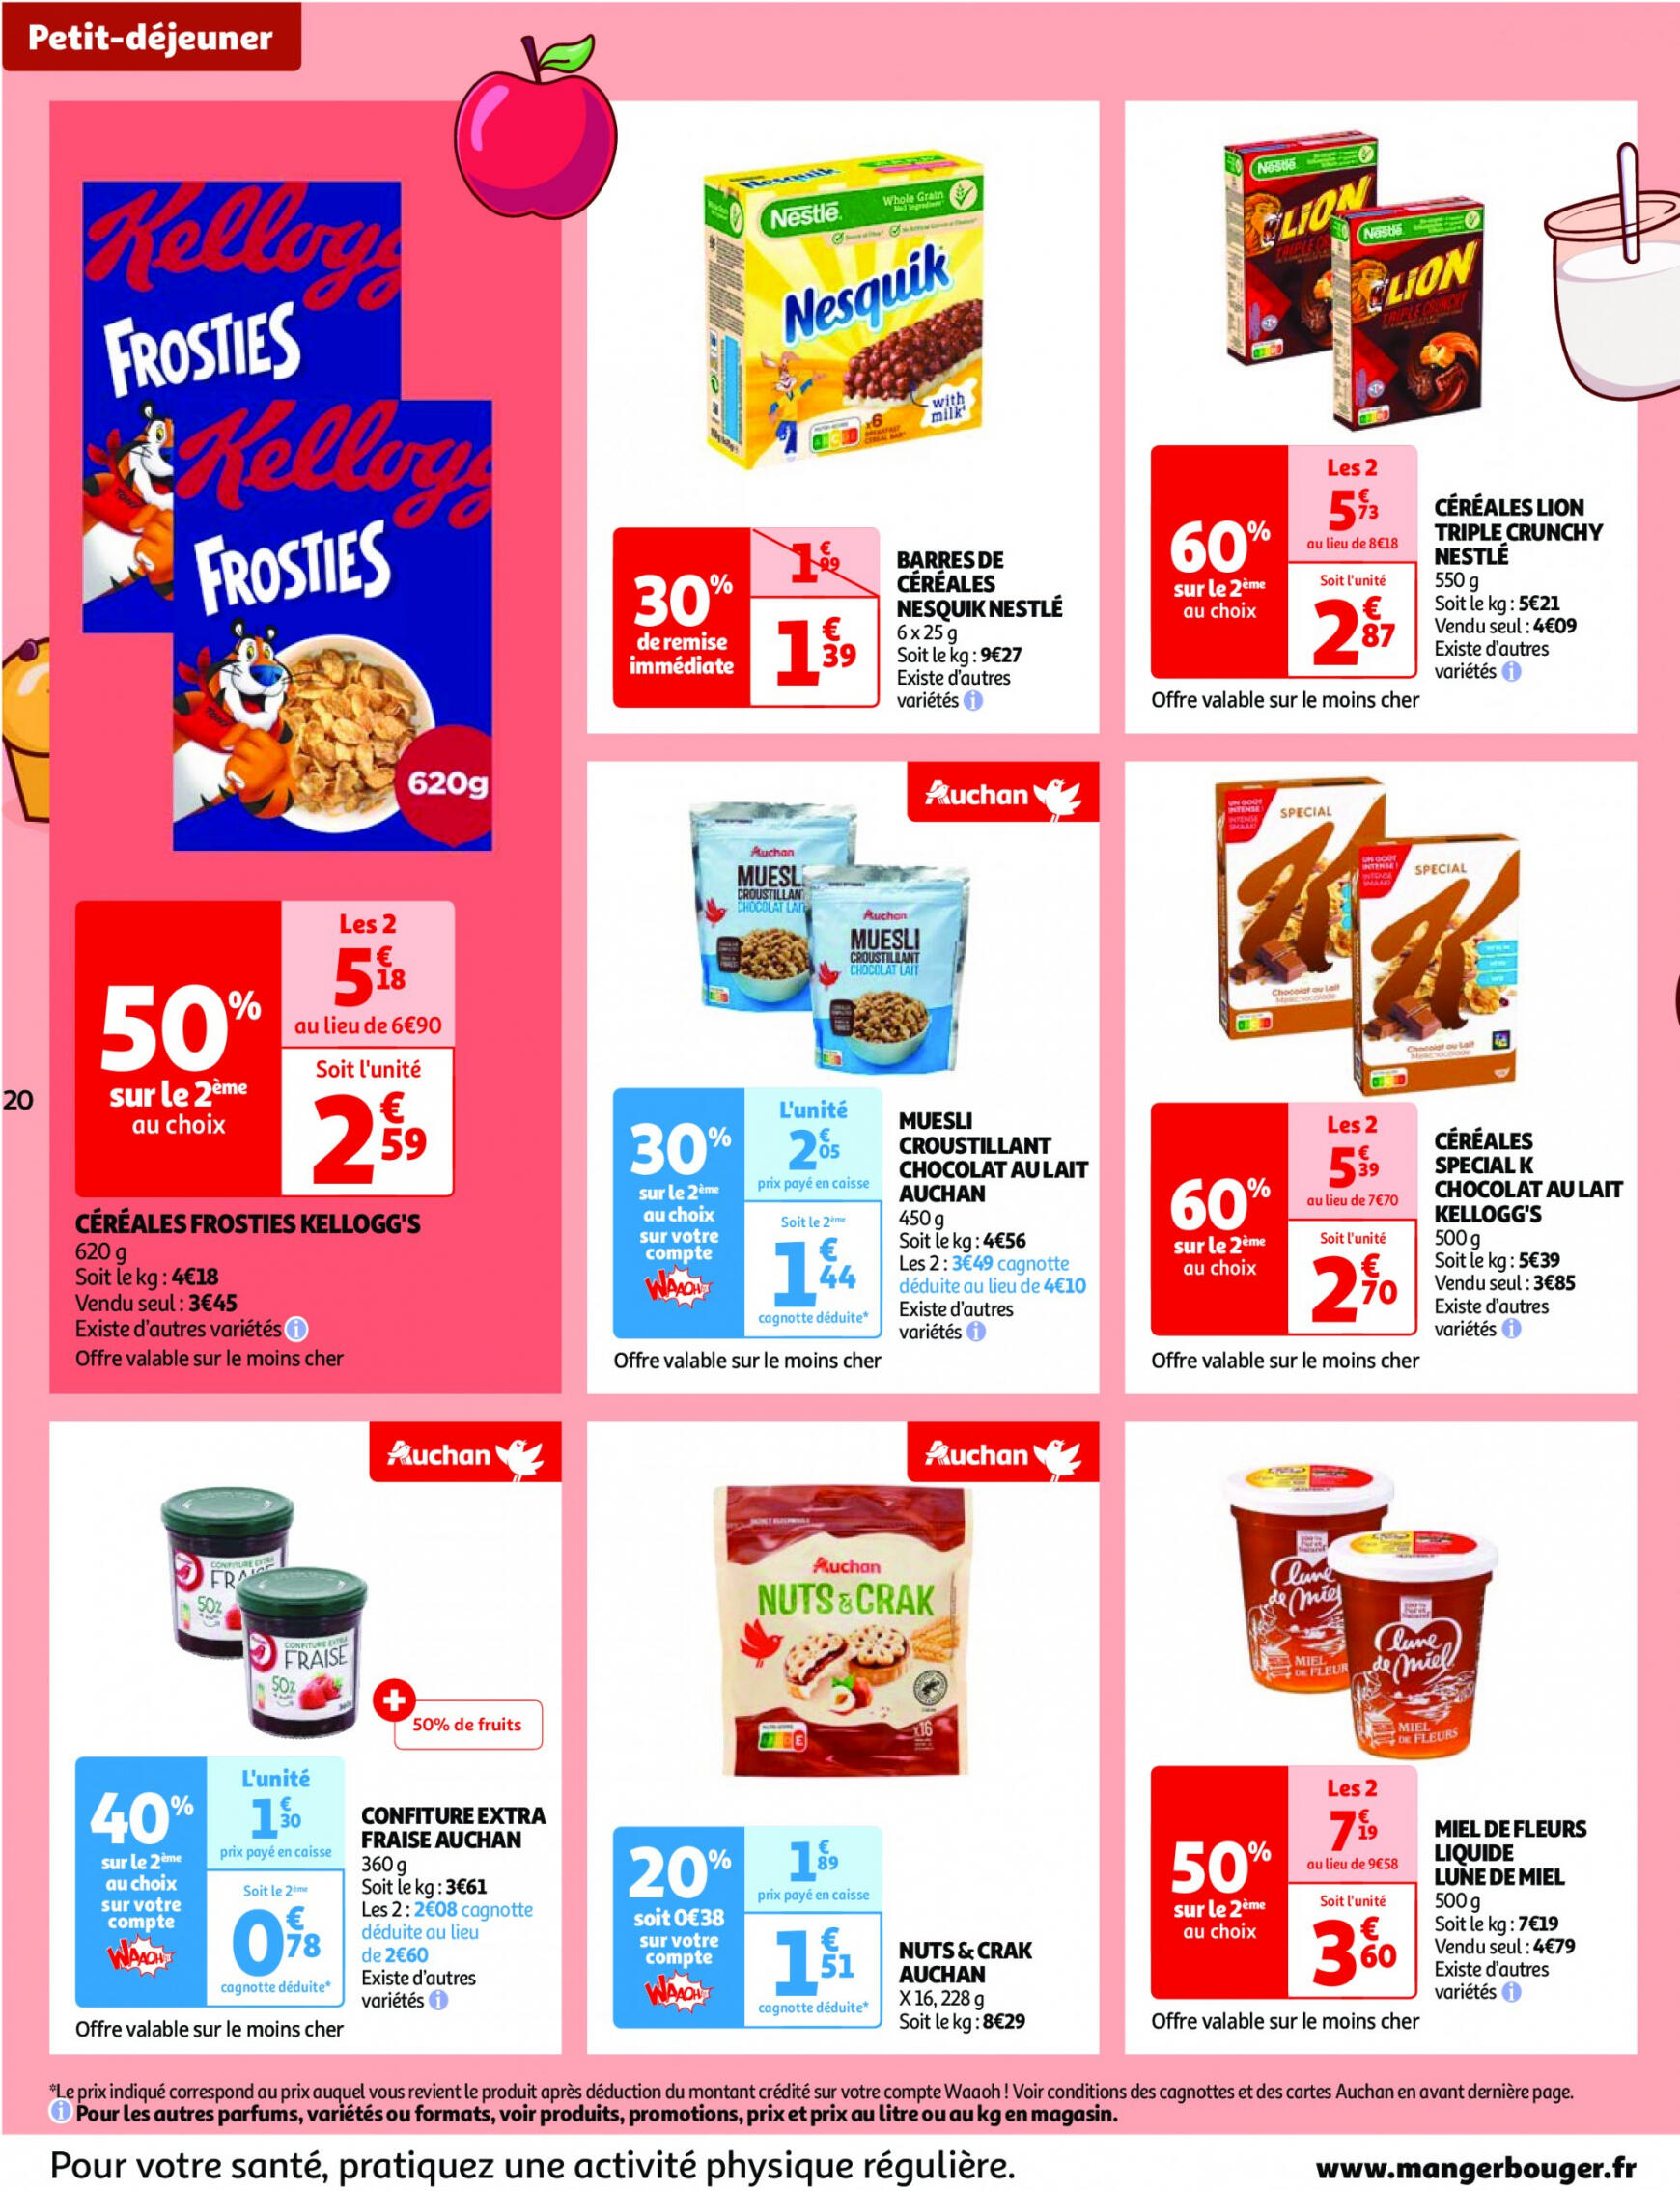 auchan - Auchan - Nos surgelés ont tout bon folder huidig 14.05. - 21.05. - page: 20